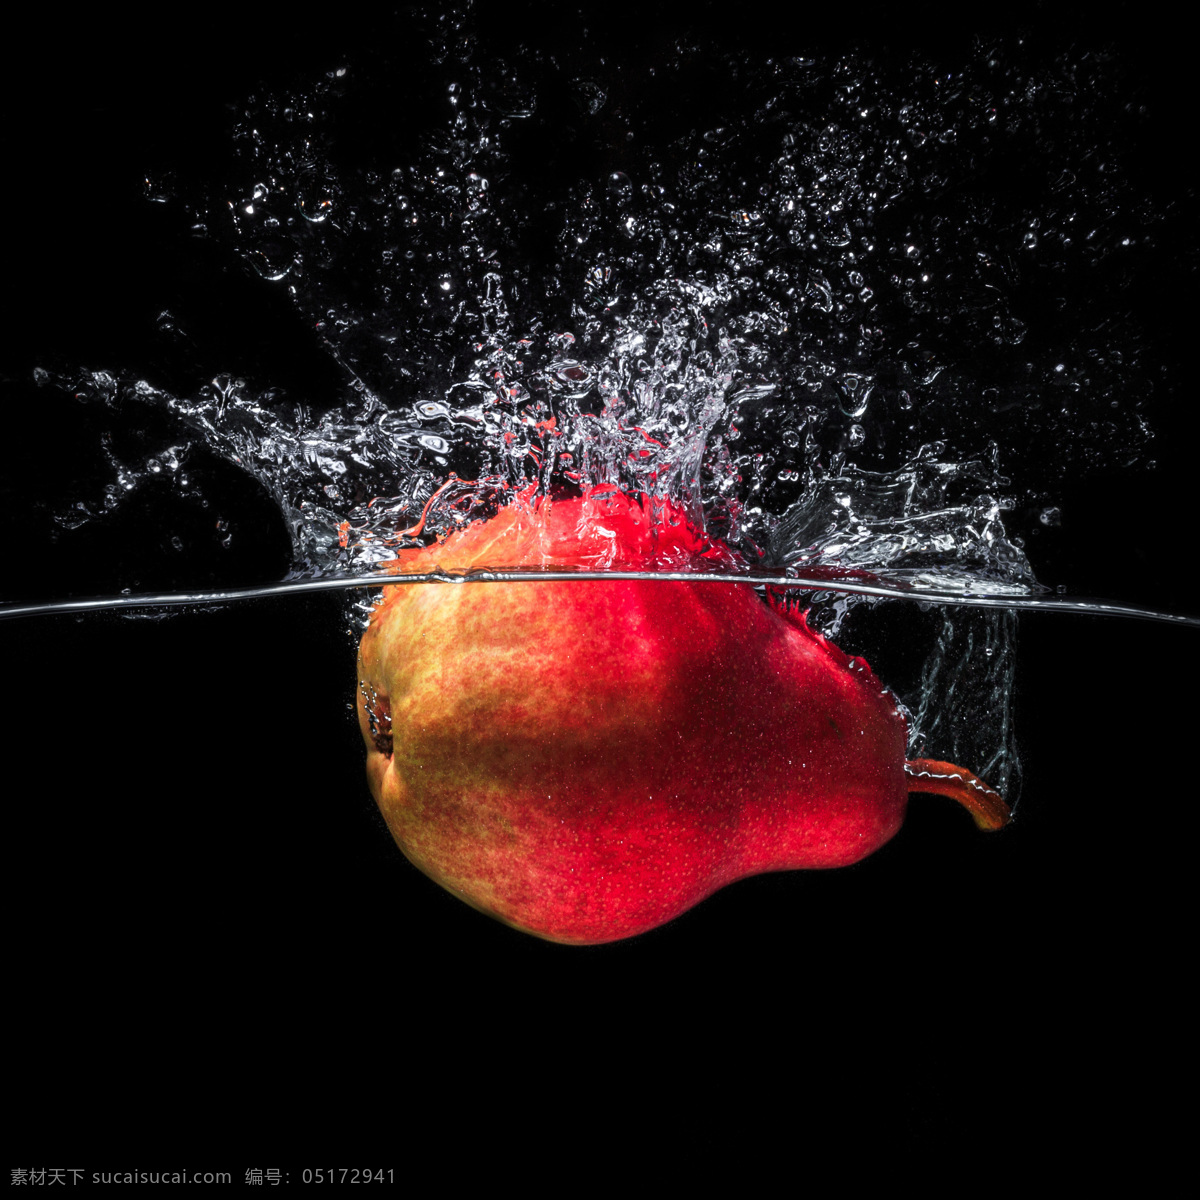 掉 进水 里 新鲜 梨子 梨 中 水果 落入 水中 新鲜水果 动感水花 溅起的水花 飞溅的水花 蔬菜图片 餐饮美食